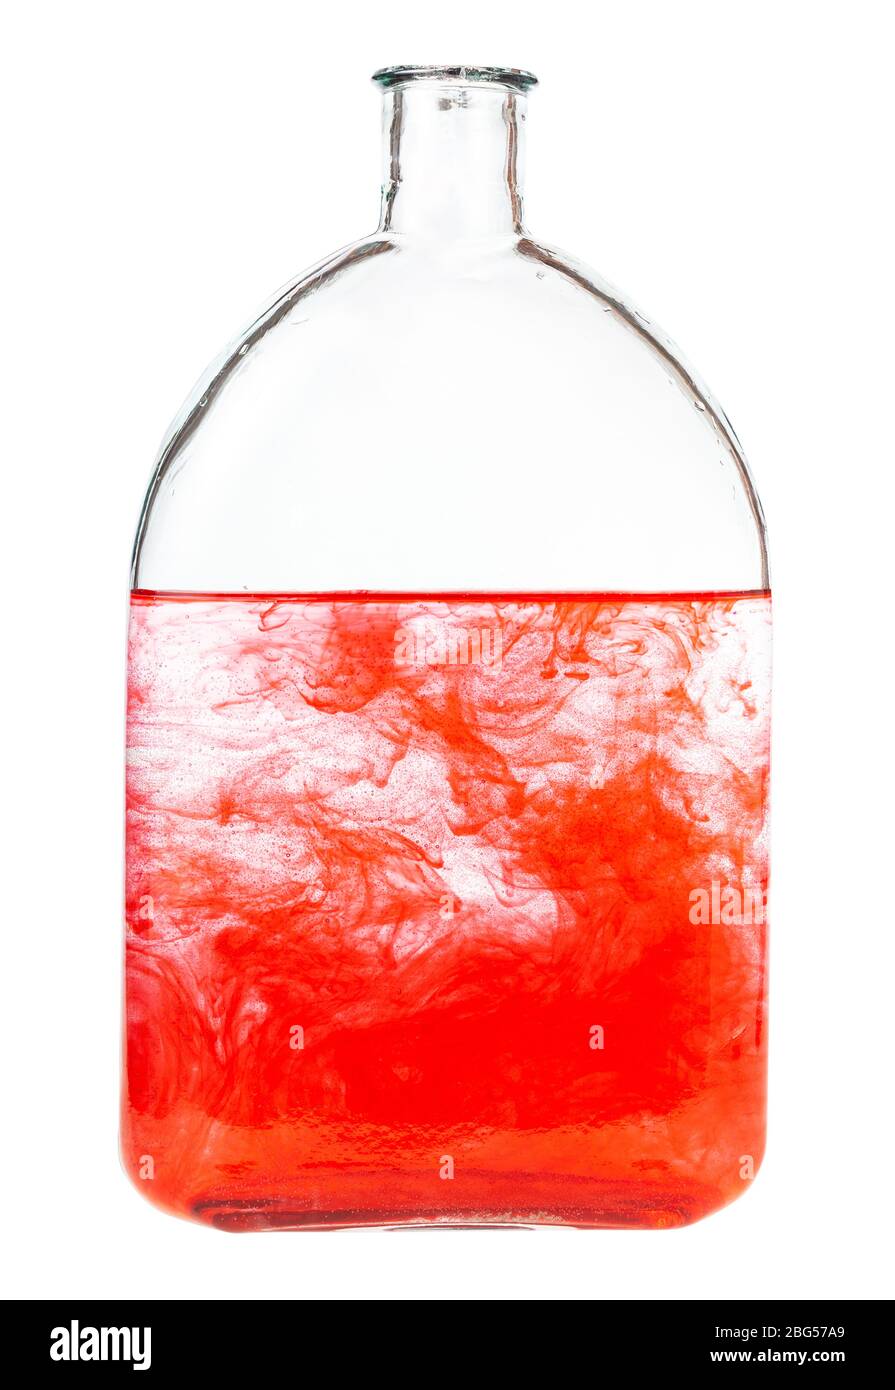 il colorante rosso si dissolve in acqua in bottiglia isolata su fondo bianco Foto Stock